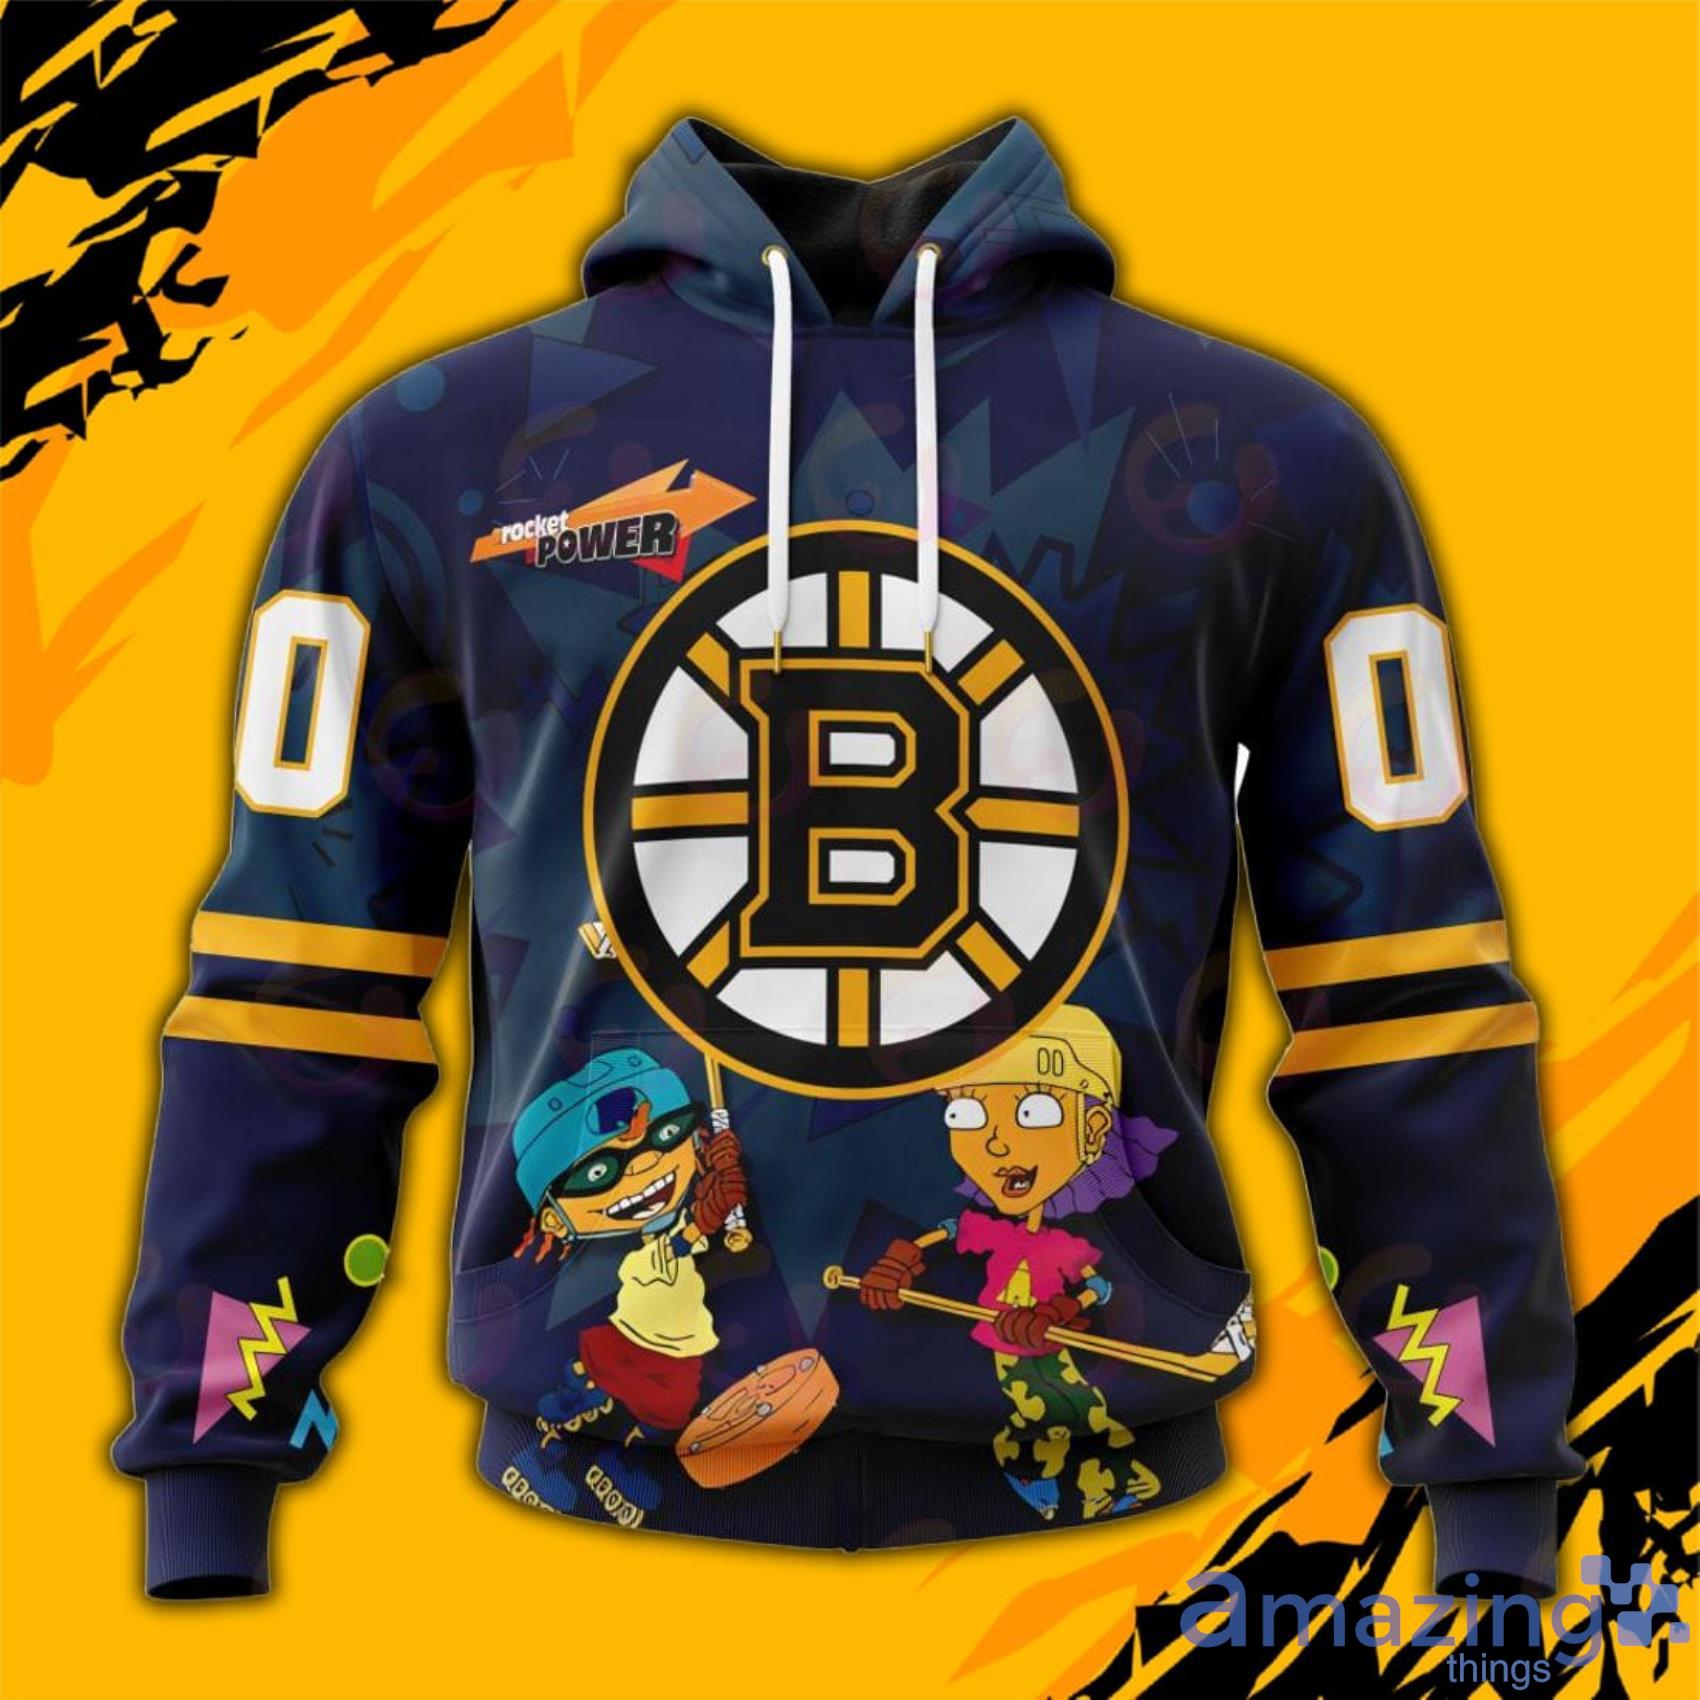 NHL Boston Bruins Custom Name Number Retro Jersey Fleece Blanket